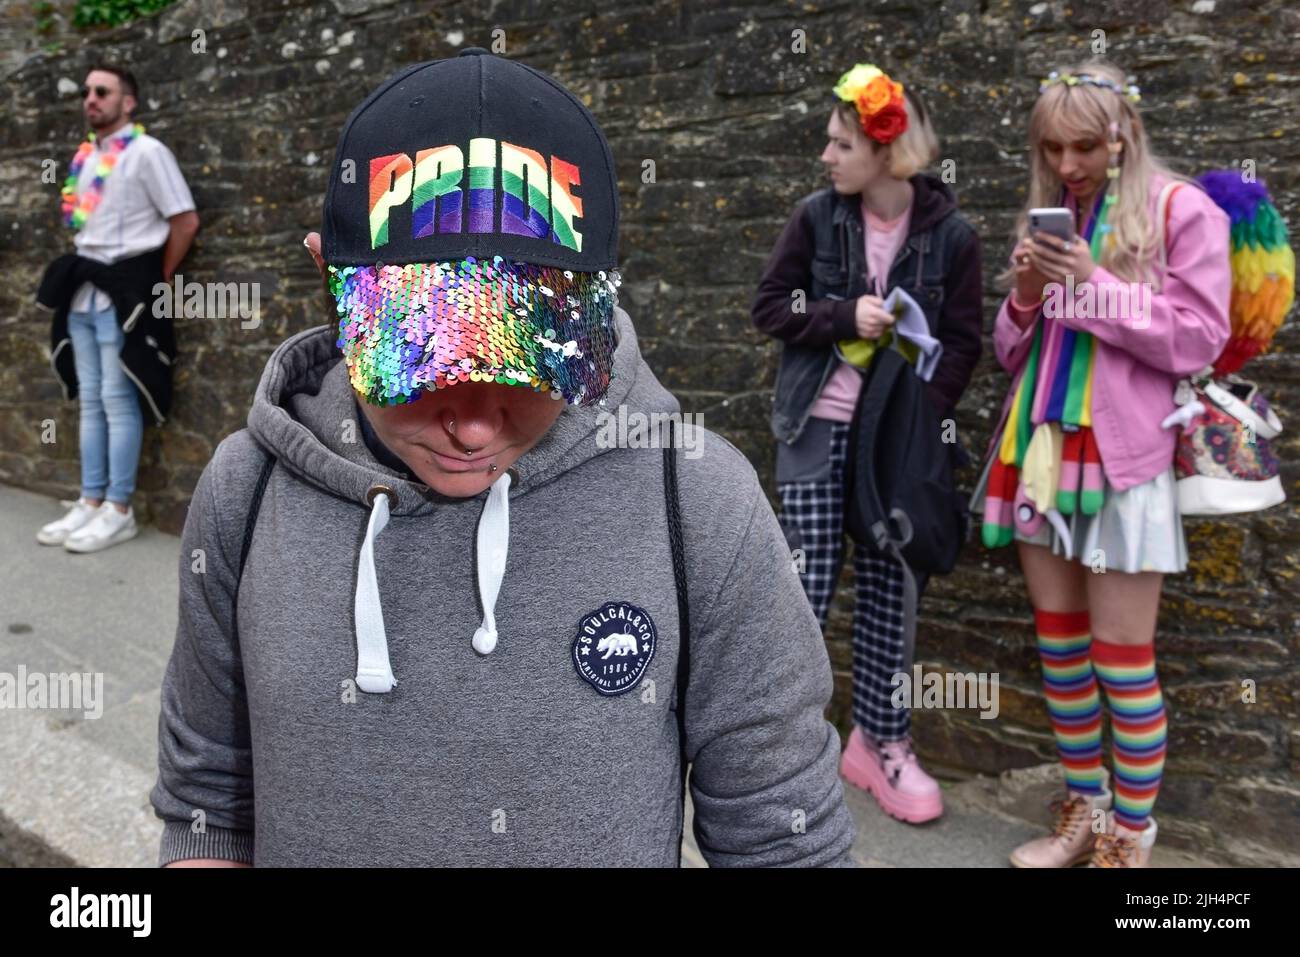 Un participant portant une casquette de baseball colorée lors du vibrant défilé des Prides Prides de Cornwall dans le centre-ville de Newquay, au Royaume-Uni. Banque D'Images